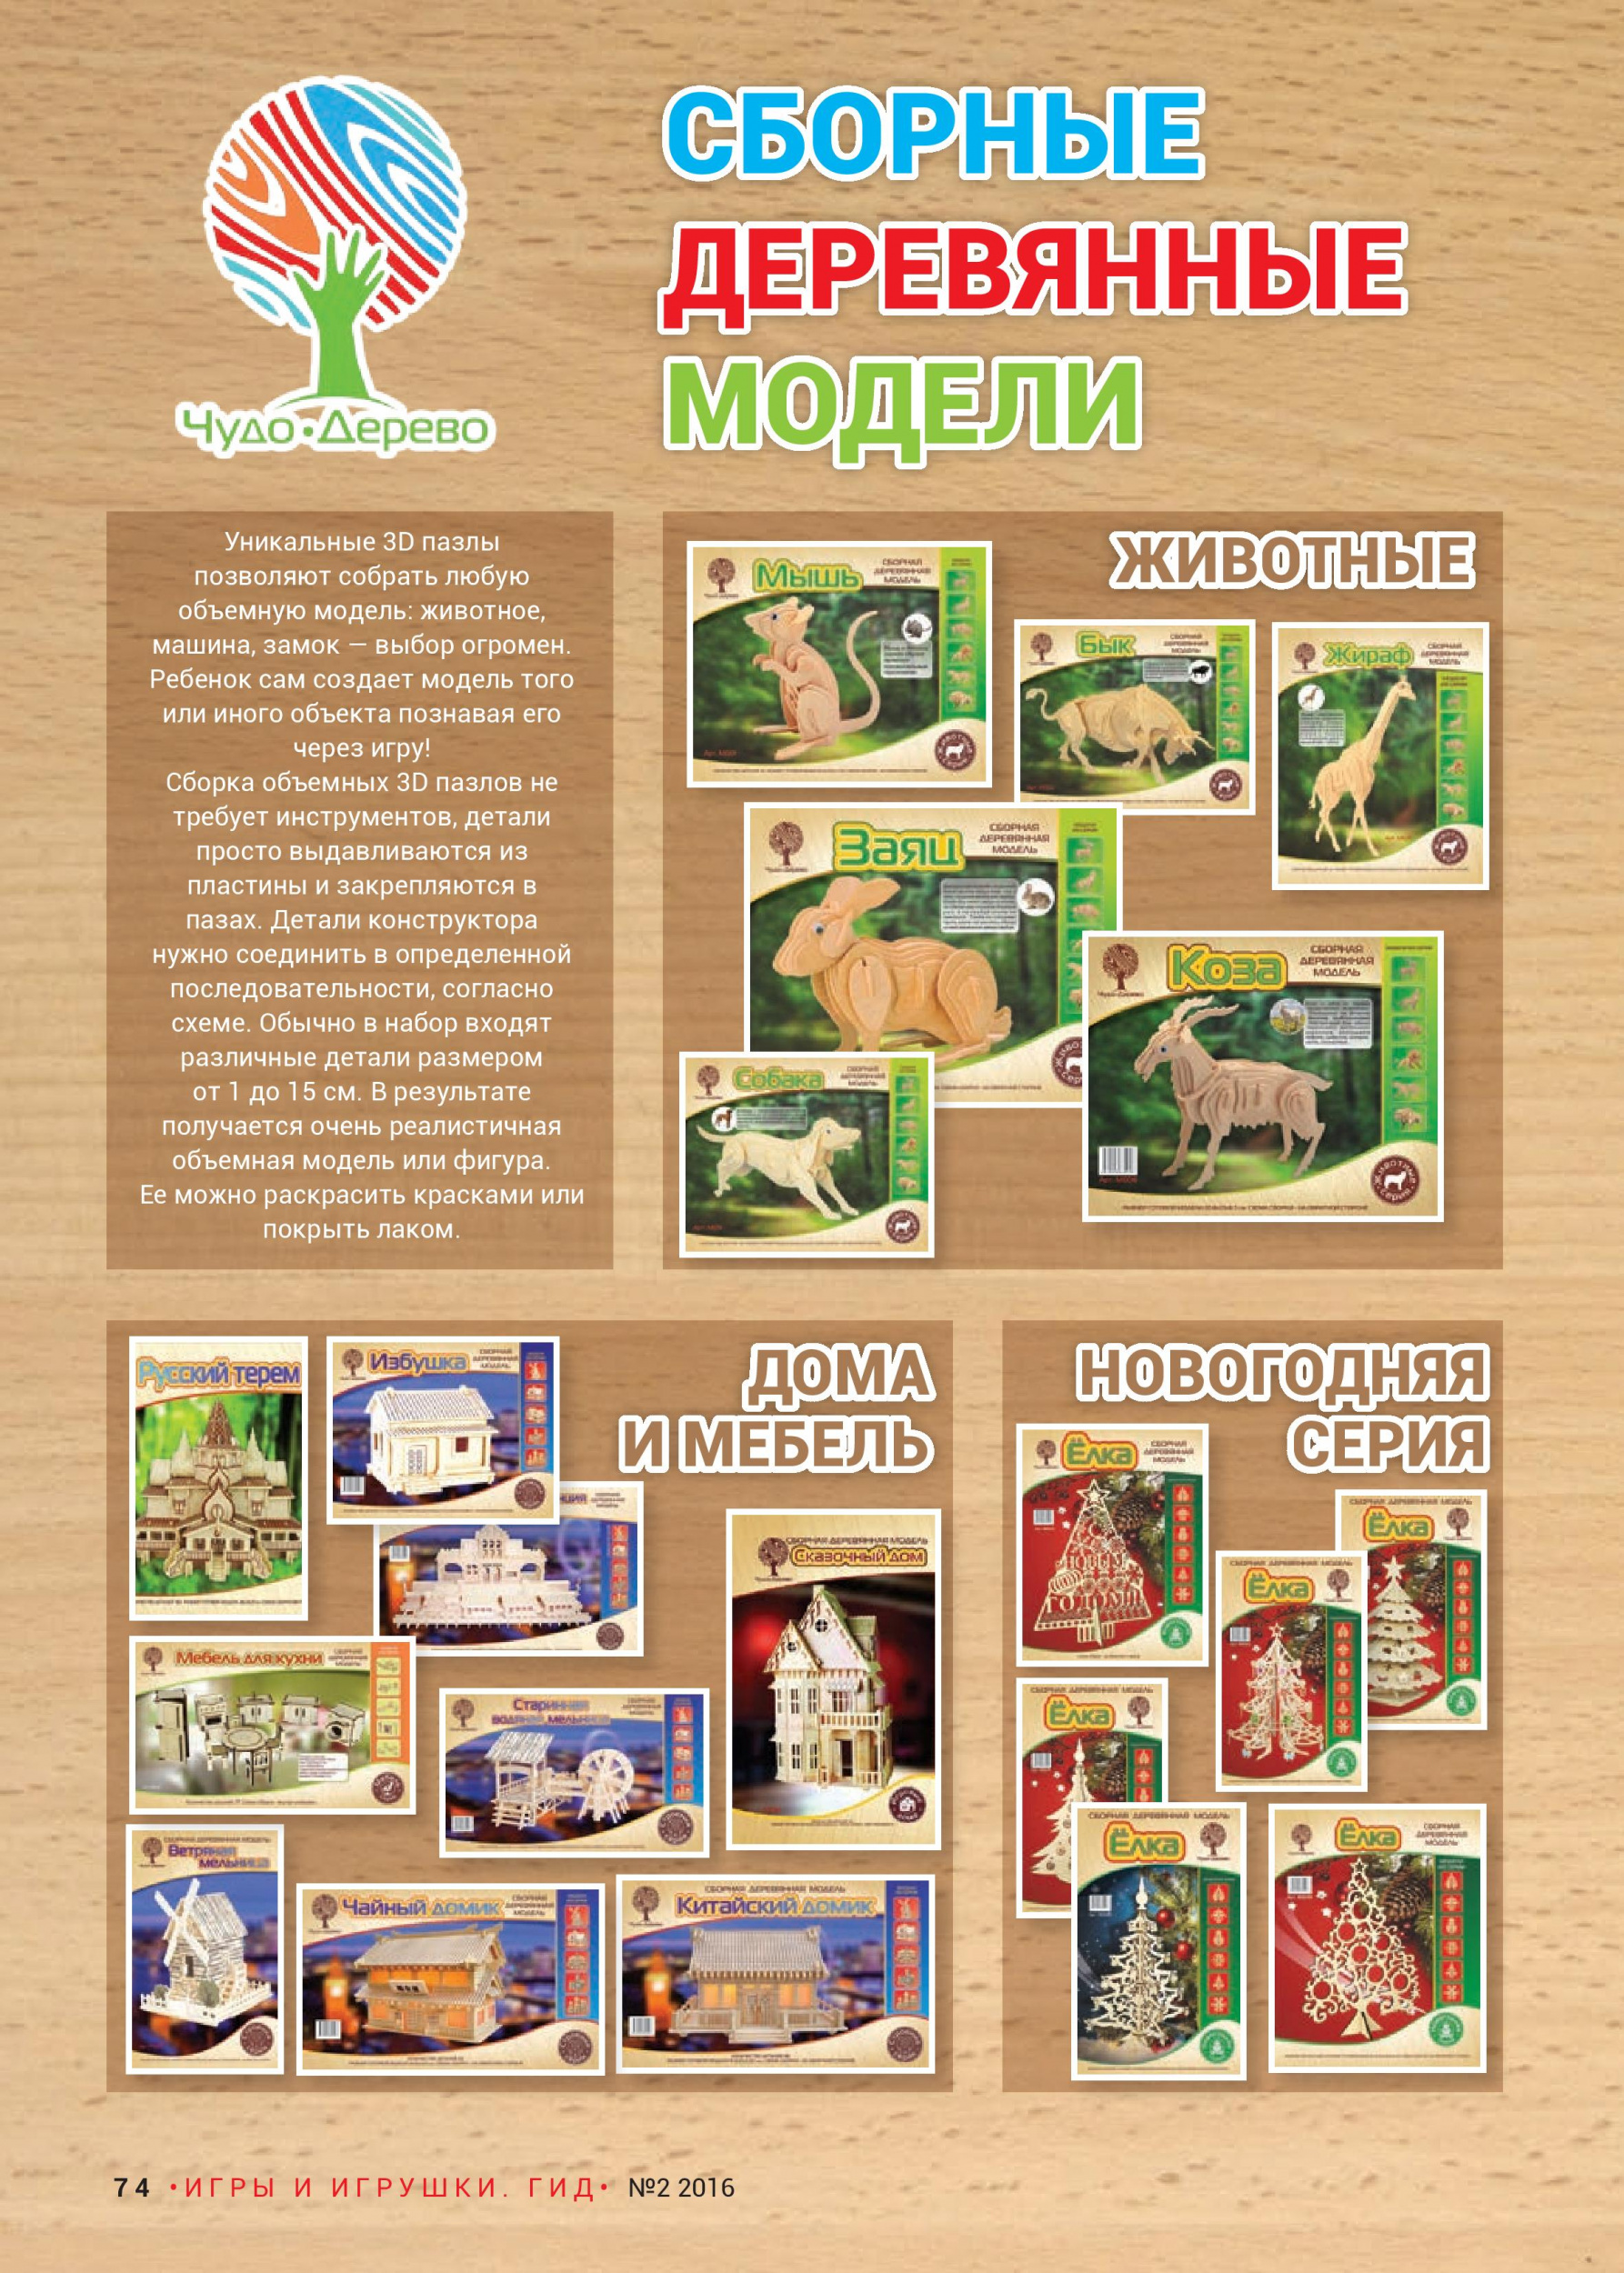 Сборные деревянные модели